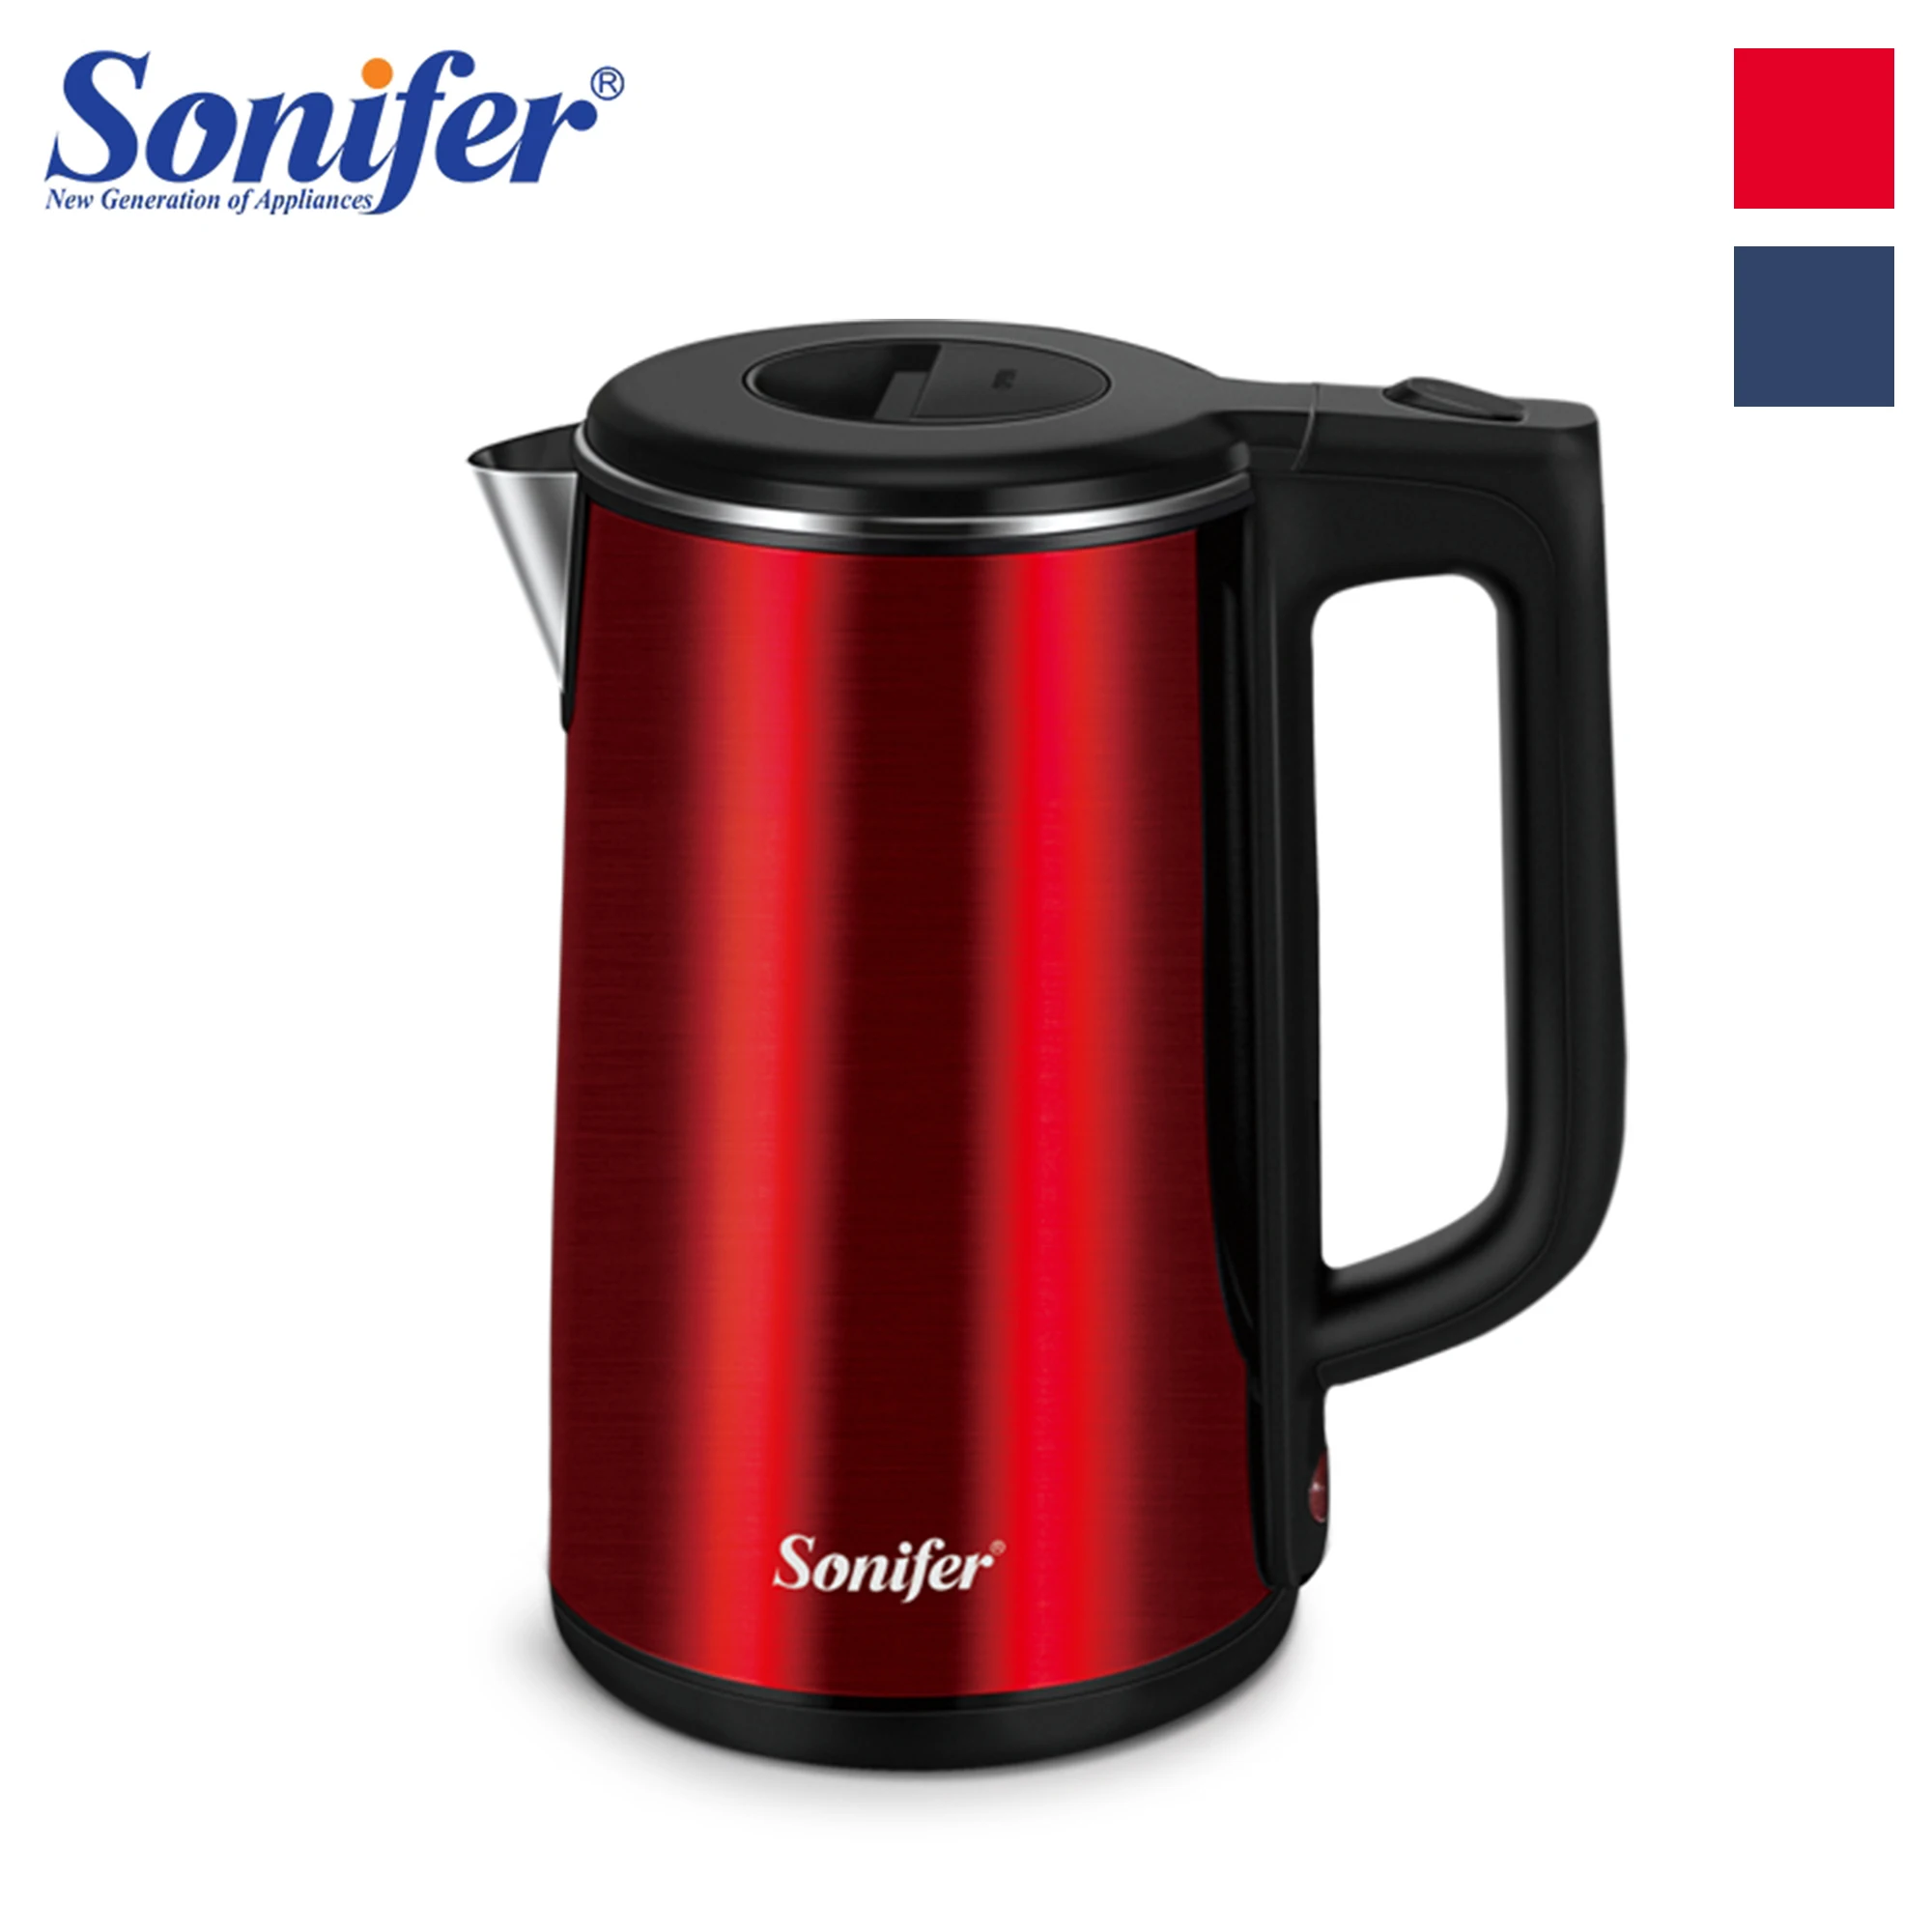 

Электрический чайник Sonifer 1.8л, нержавеющая сталь, Кухонная техника, смарт-чайник, чайник со свистком, самовар, чайник, подарок SF2077